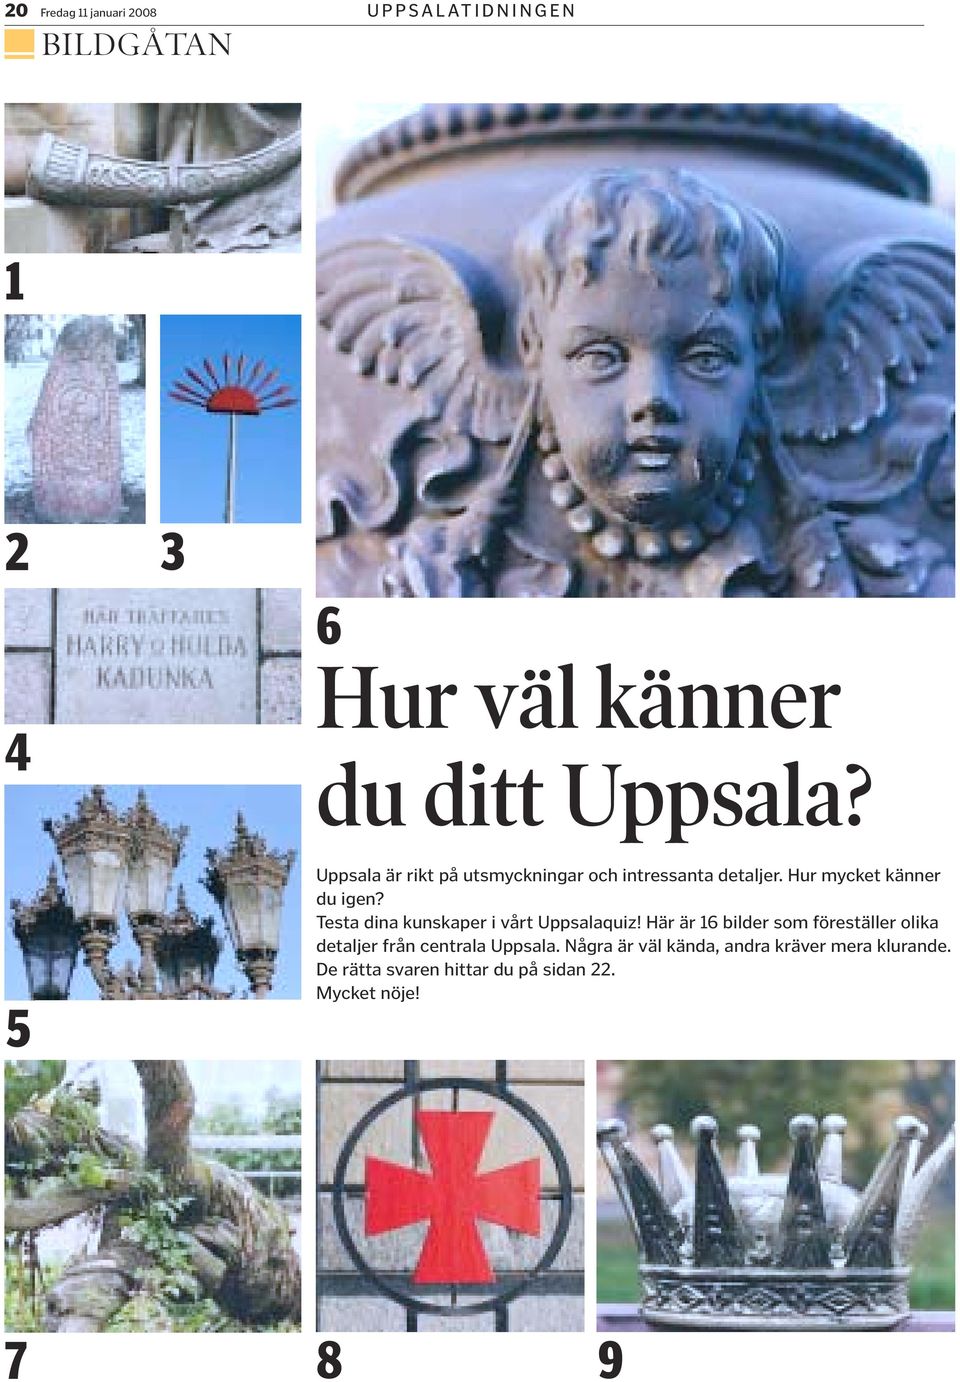 Testa dina kunskaper i vårt Uppsalaquiz!